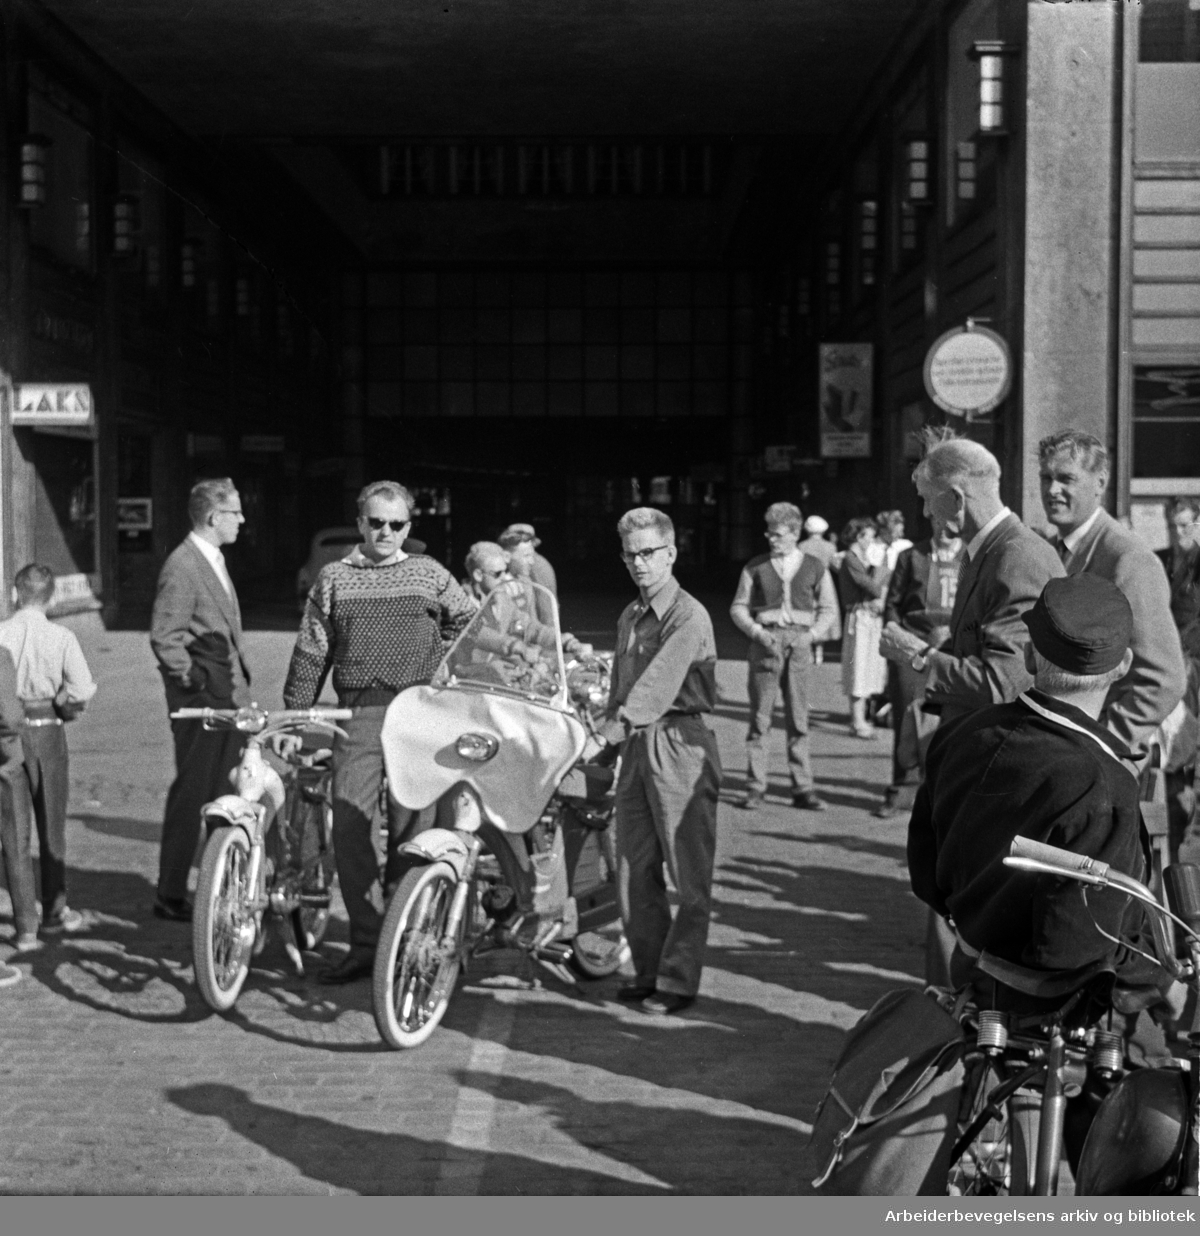 Arbeiderbladet arrangerer moped-tur fra Yongstorget til Frambu (Siggerud i Ski kommune) i samarbeid med Norges Sykkel- og Mopedeieres Forening, 10. juni 1958. Alv Ramberg og Erling Elstad fra Arbeiderbladet til høyre i bildet.